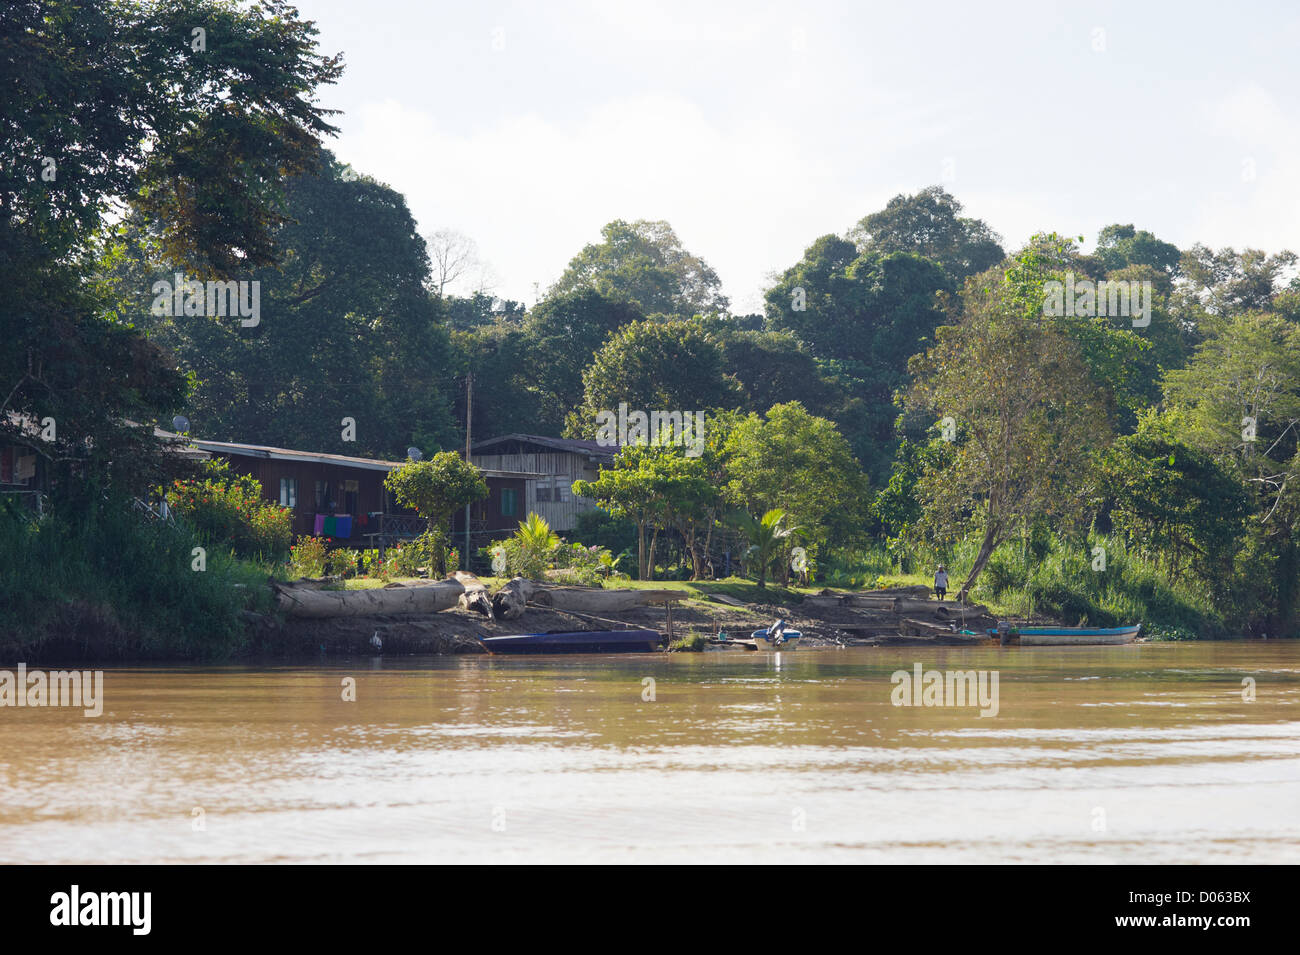 Malaysian homes on banks of Kinabatangan River, Sabah, Borneo Stock Photo